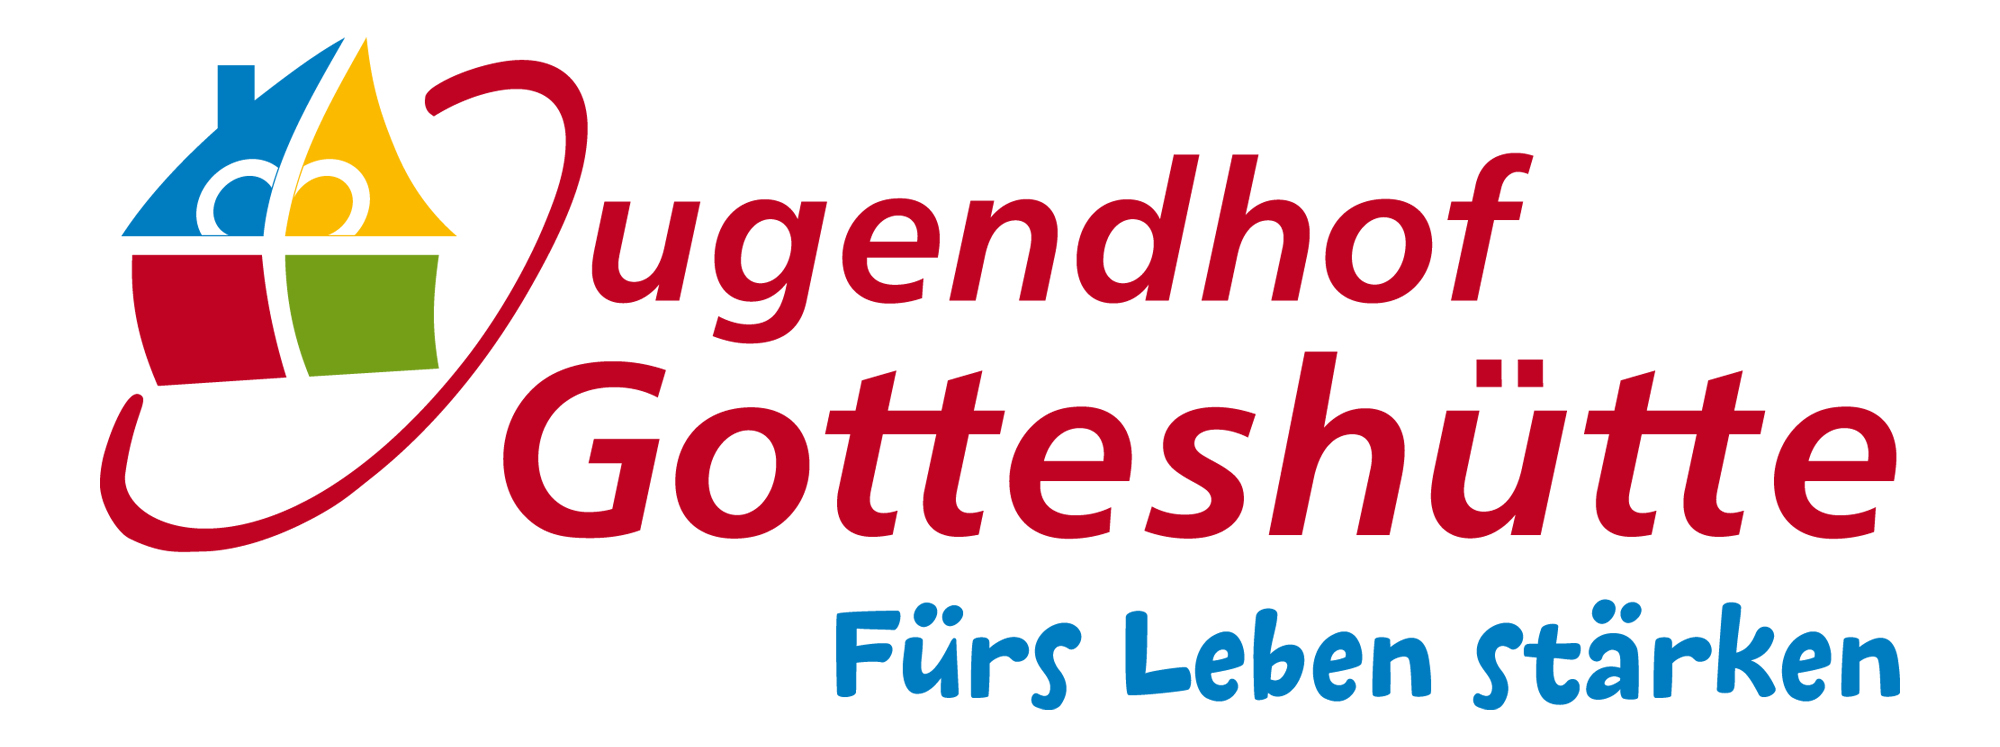 Evangelische Stiftung Gotteshütte